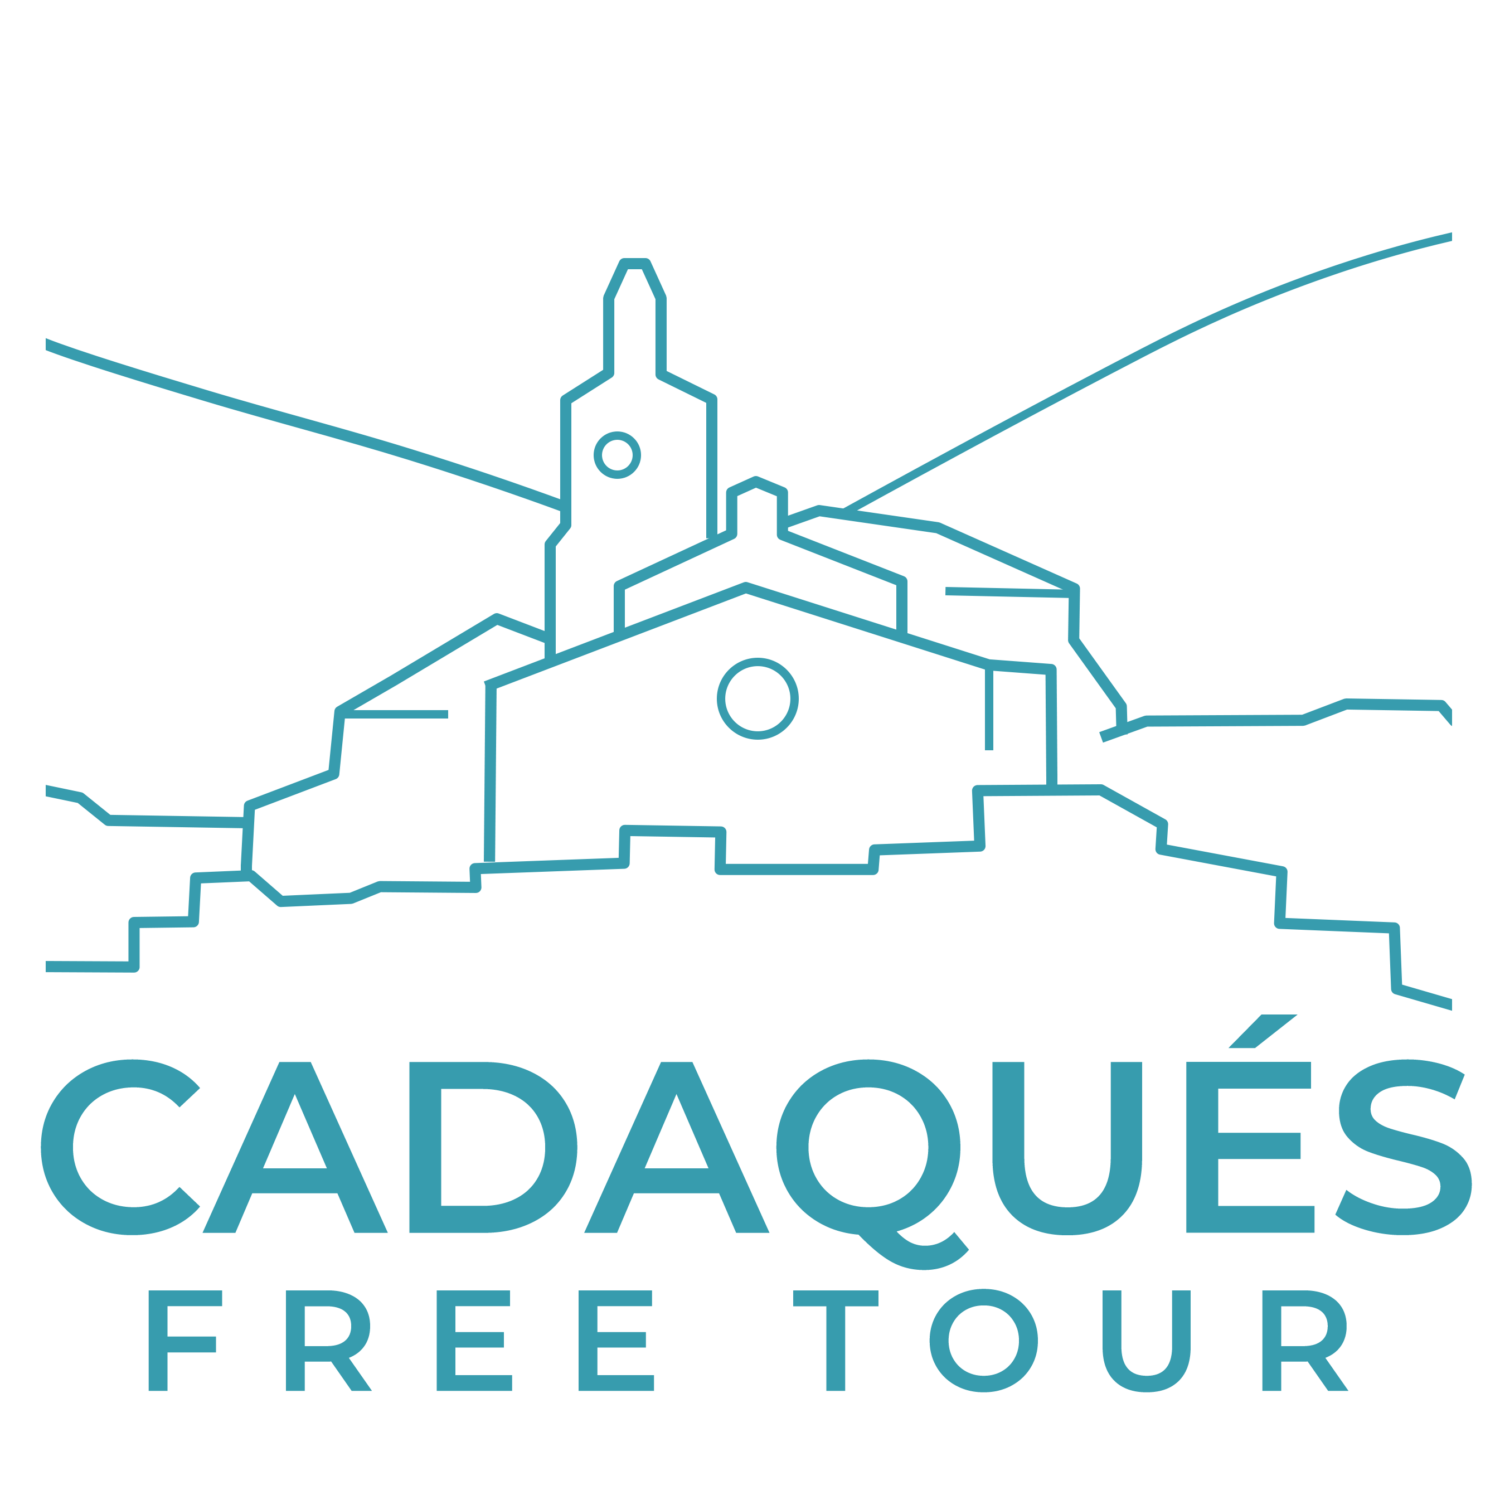 free tour cadaques